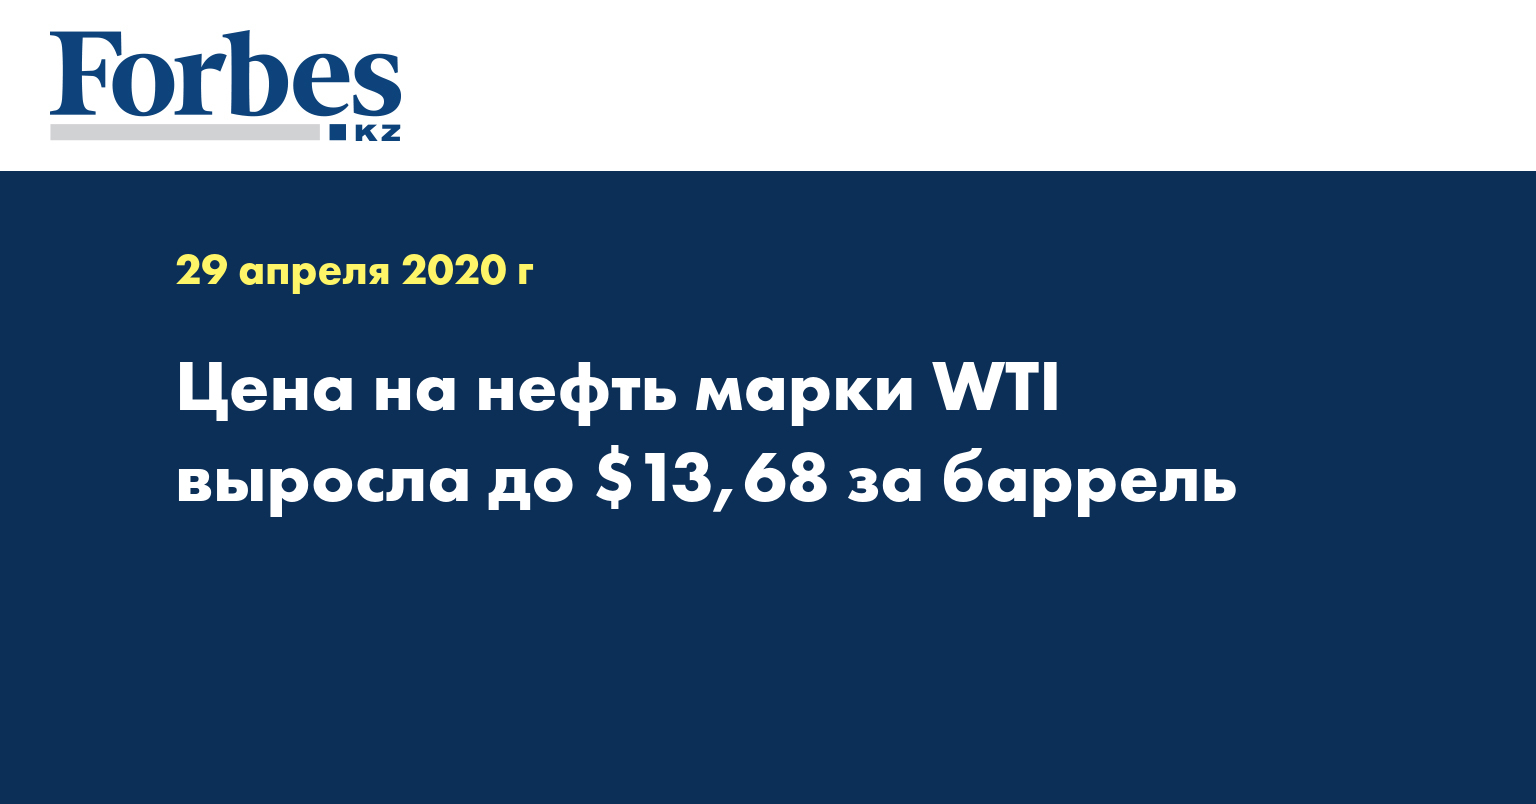 Цена на нефть марки WTI выросла до $13,68 за баррель